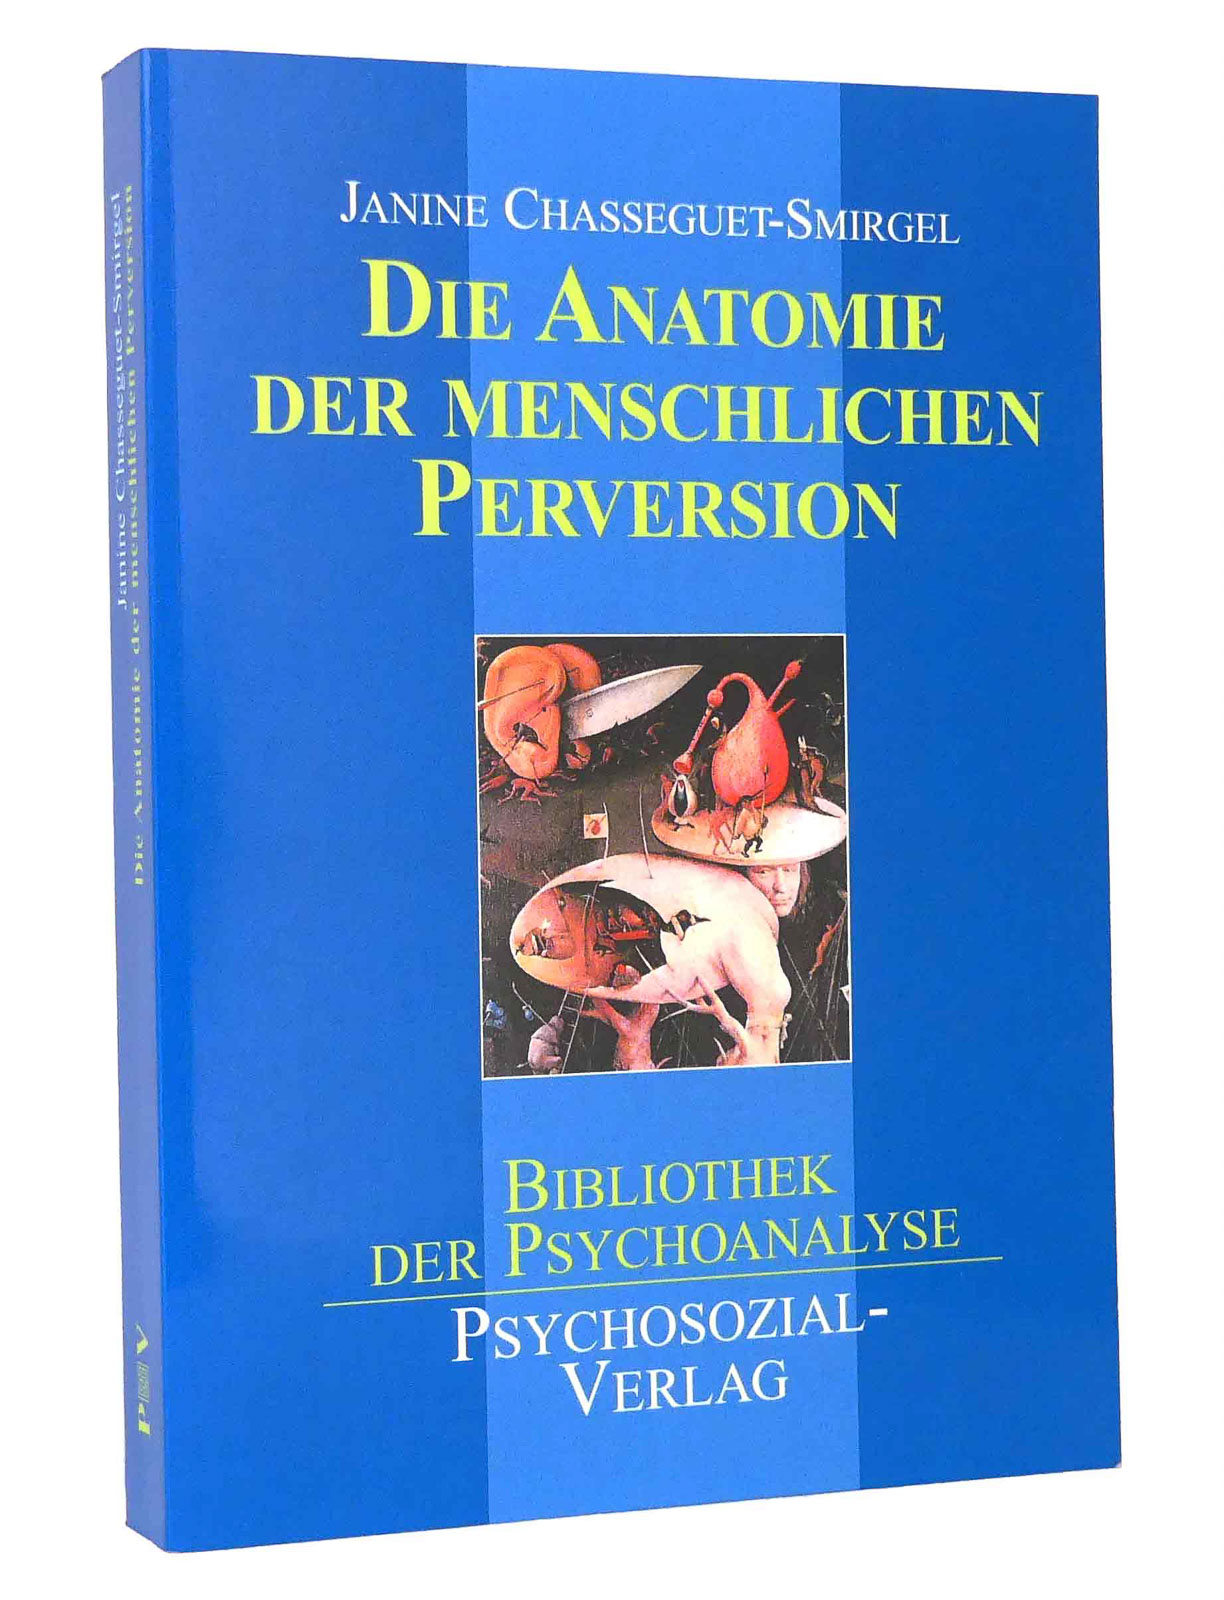 Anatomie der menschlichen Perversion : (Reihe: Bibliothek der Psychoanalyse) - Chasseguet-Smirgel, Janine